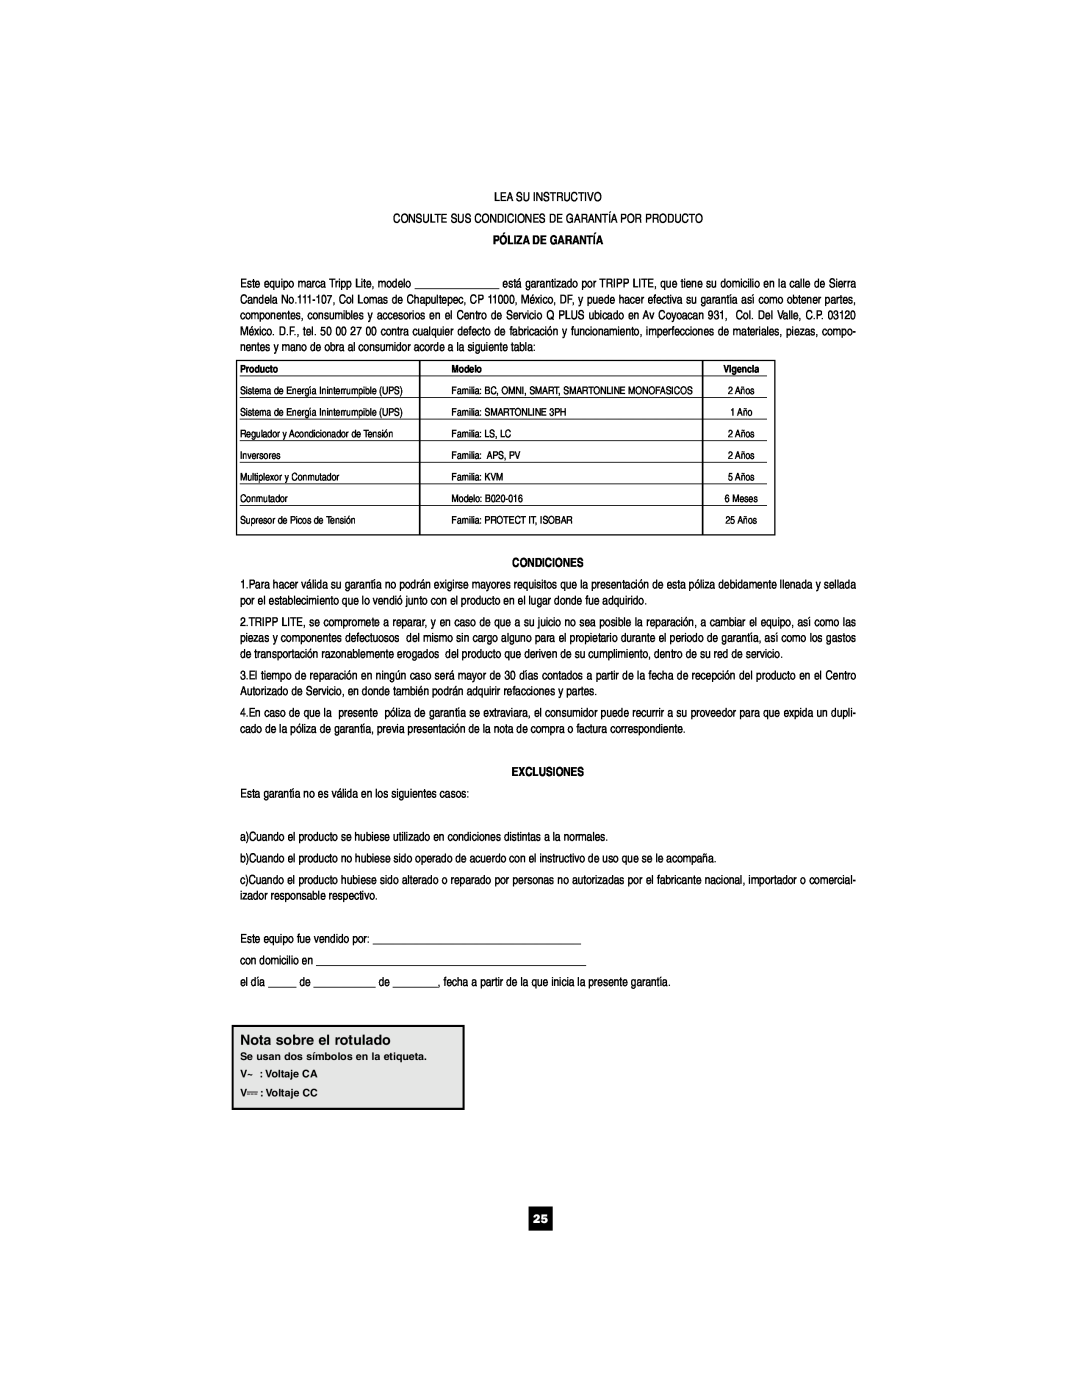 Tripp Lite 1400-3000 VA owner manual Nota sobre el rotulado, Póliza De Garantía, Condiciones, Exclusiones 